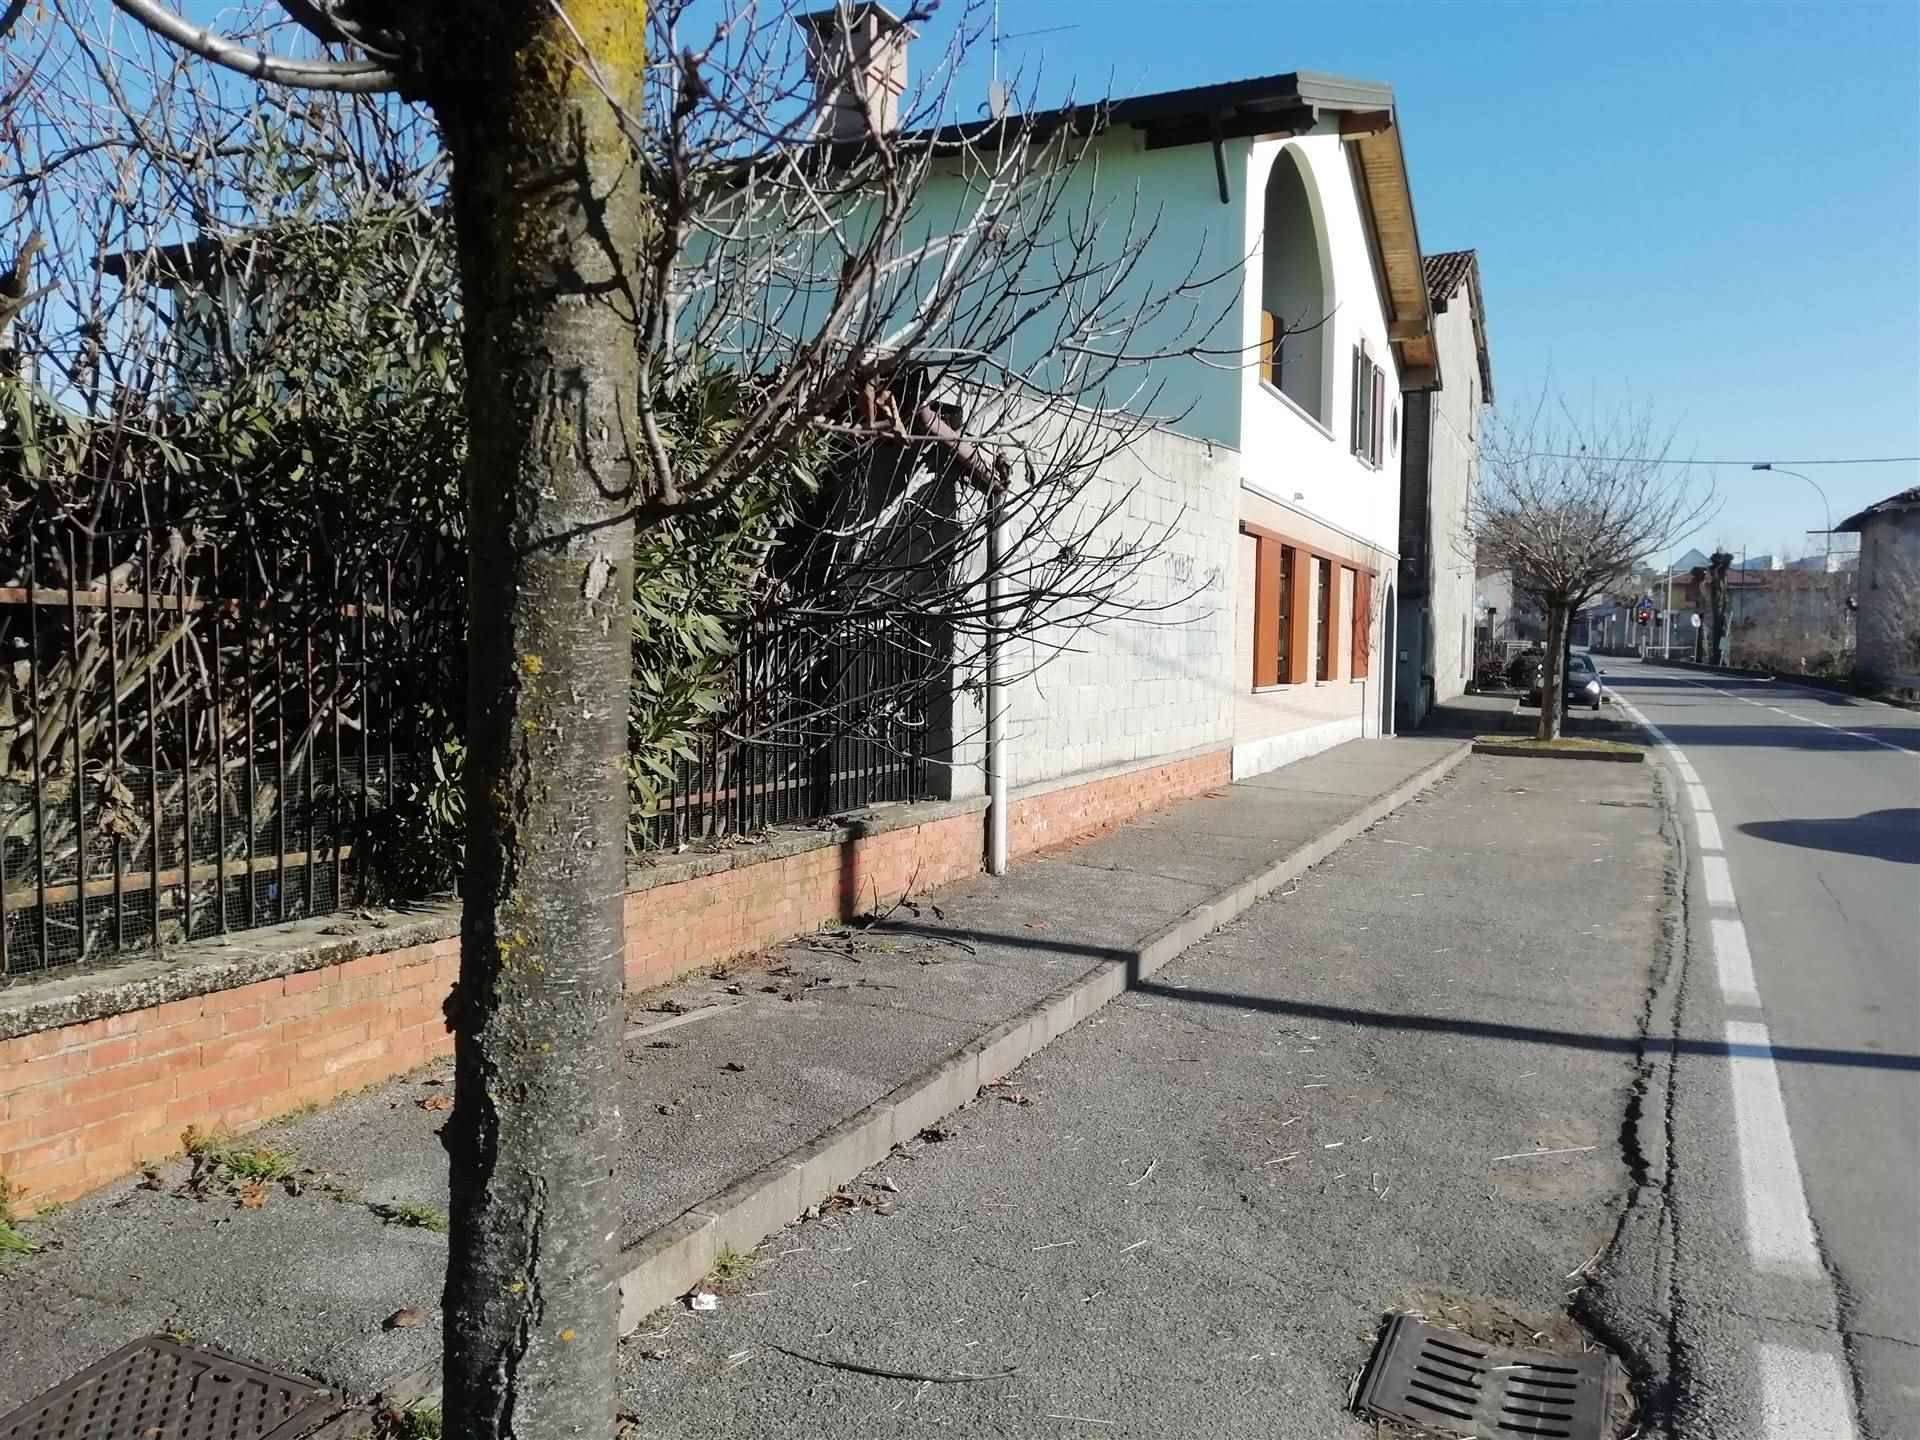 Rustico / Casale in vendita a Casirate d'Adda, 1 locali, prezzo € 125.000 | PortaleAgenzieImmobiliari.it